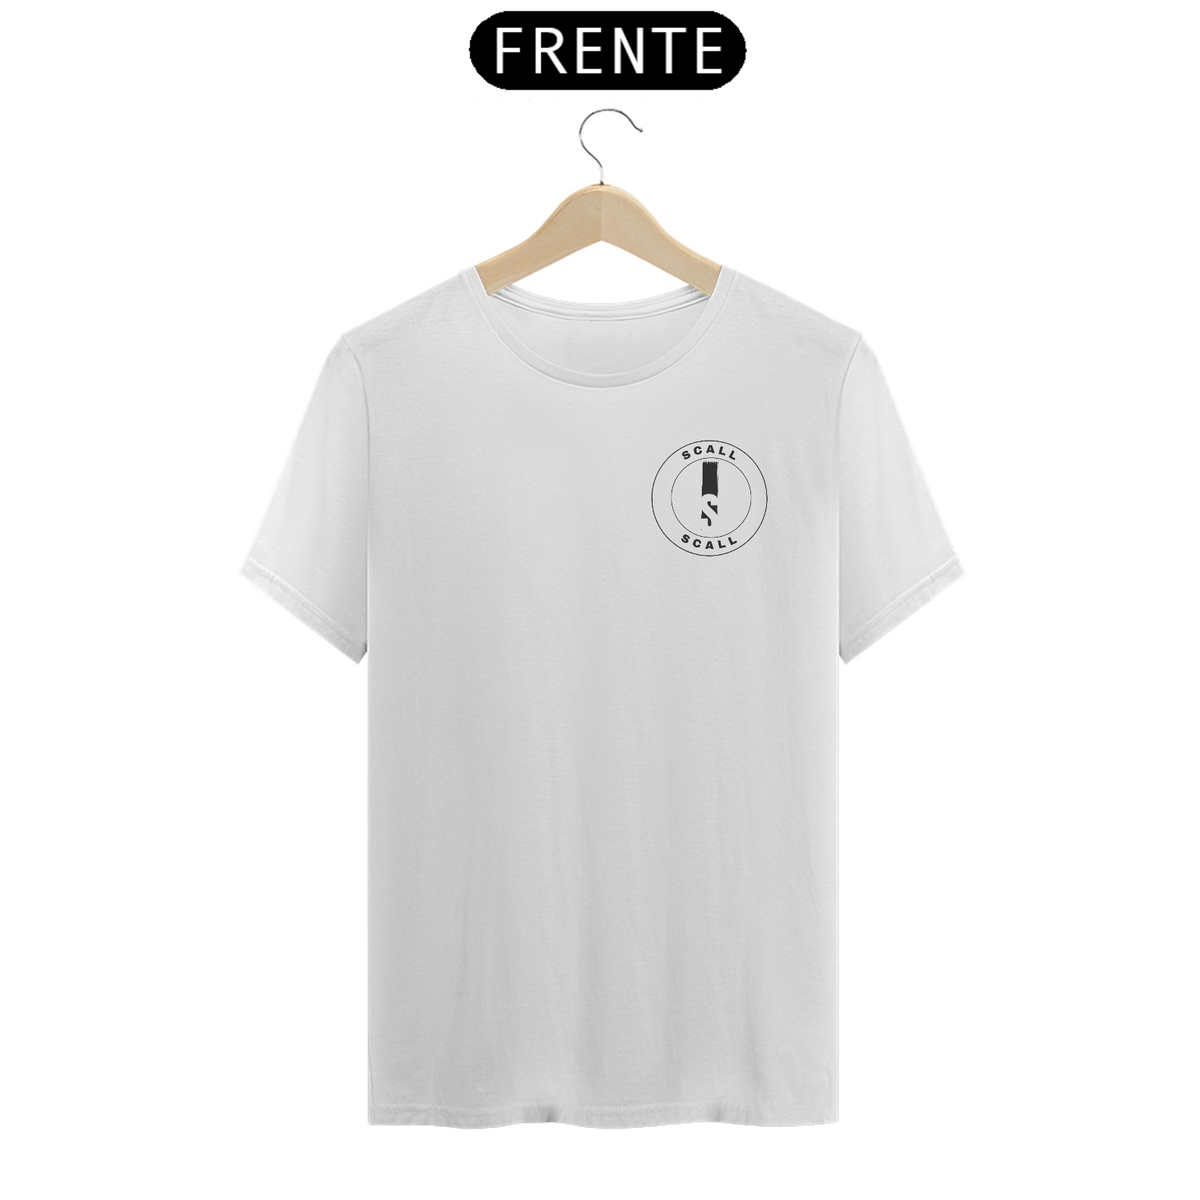 Nome do produto: Camisetas T-Shirt  - SCALL